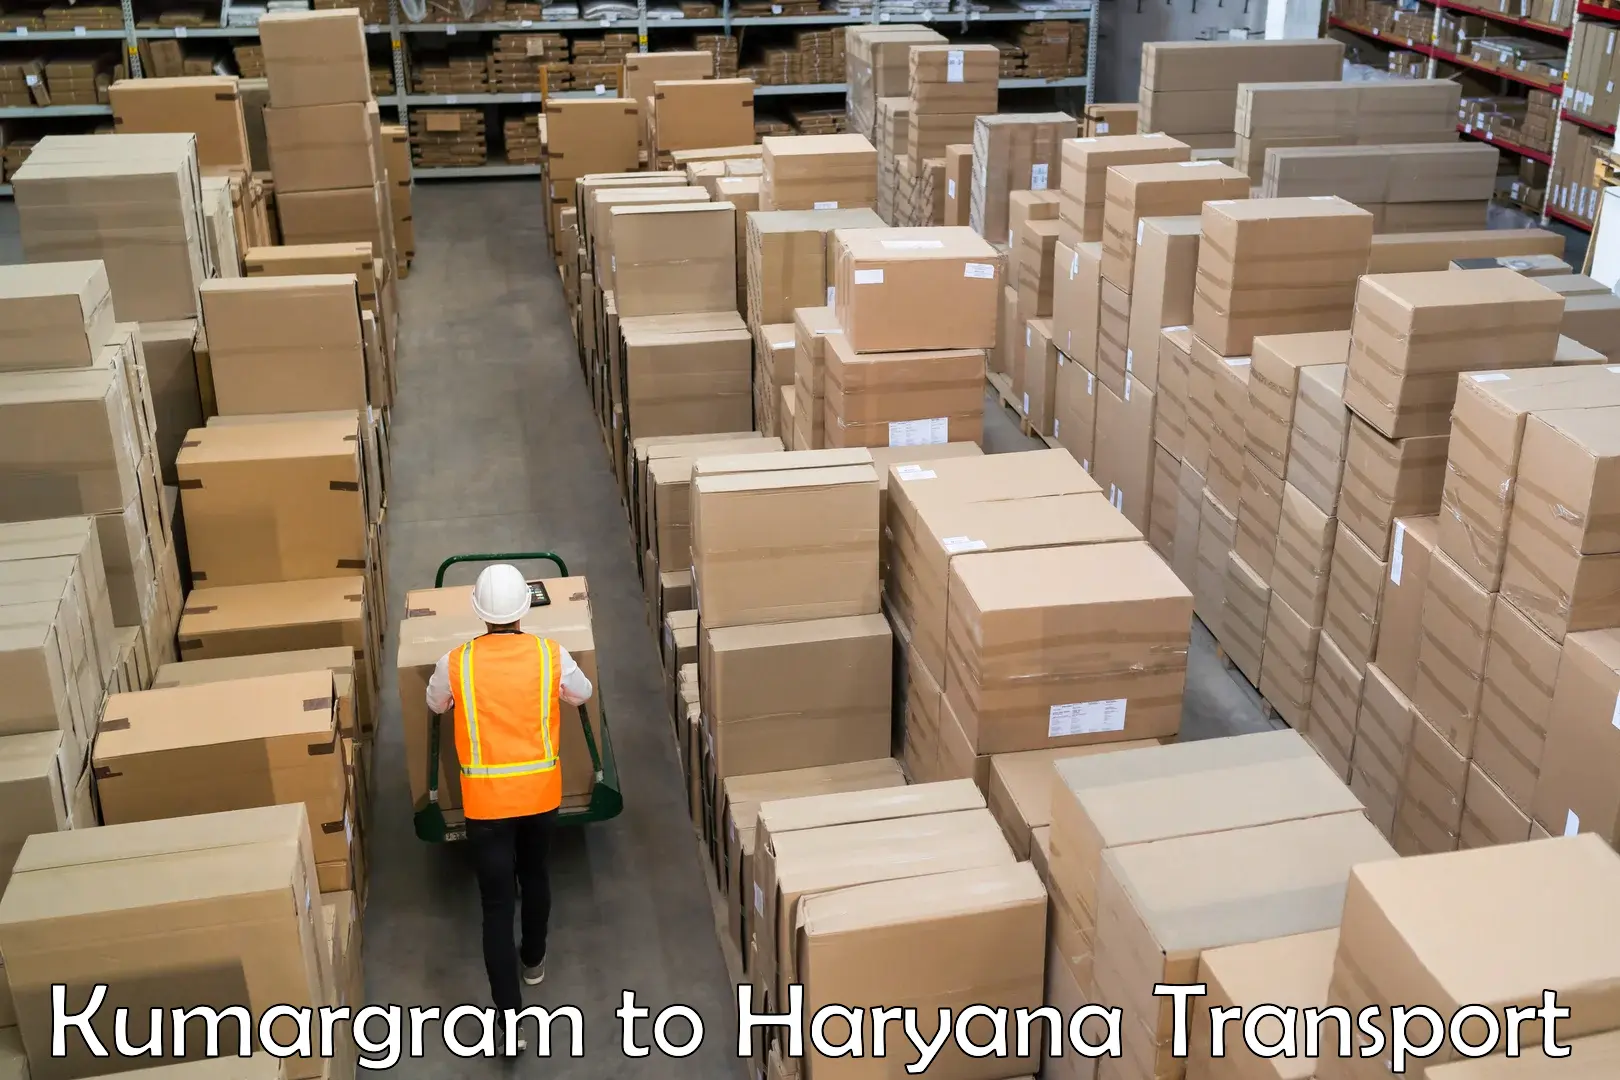 Truck transport companies in India Kumargram to Narwana